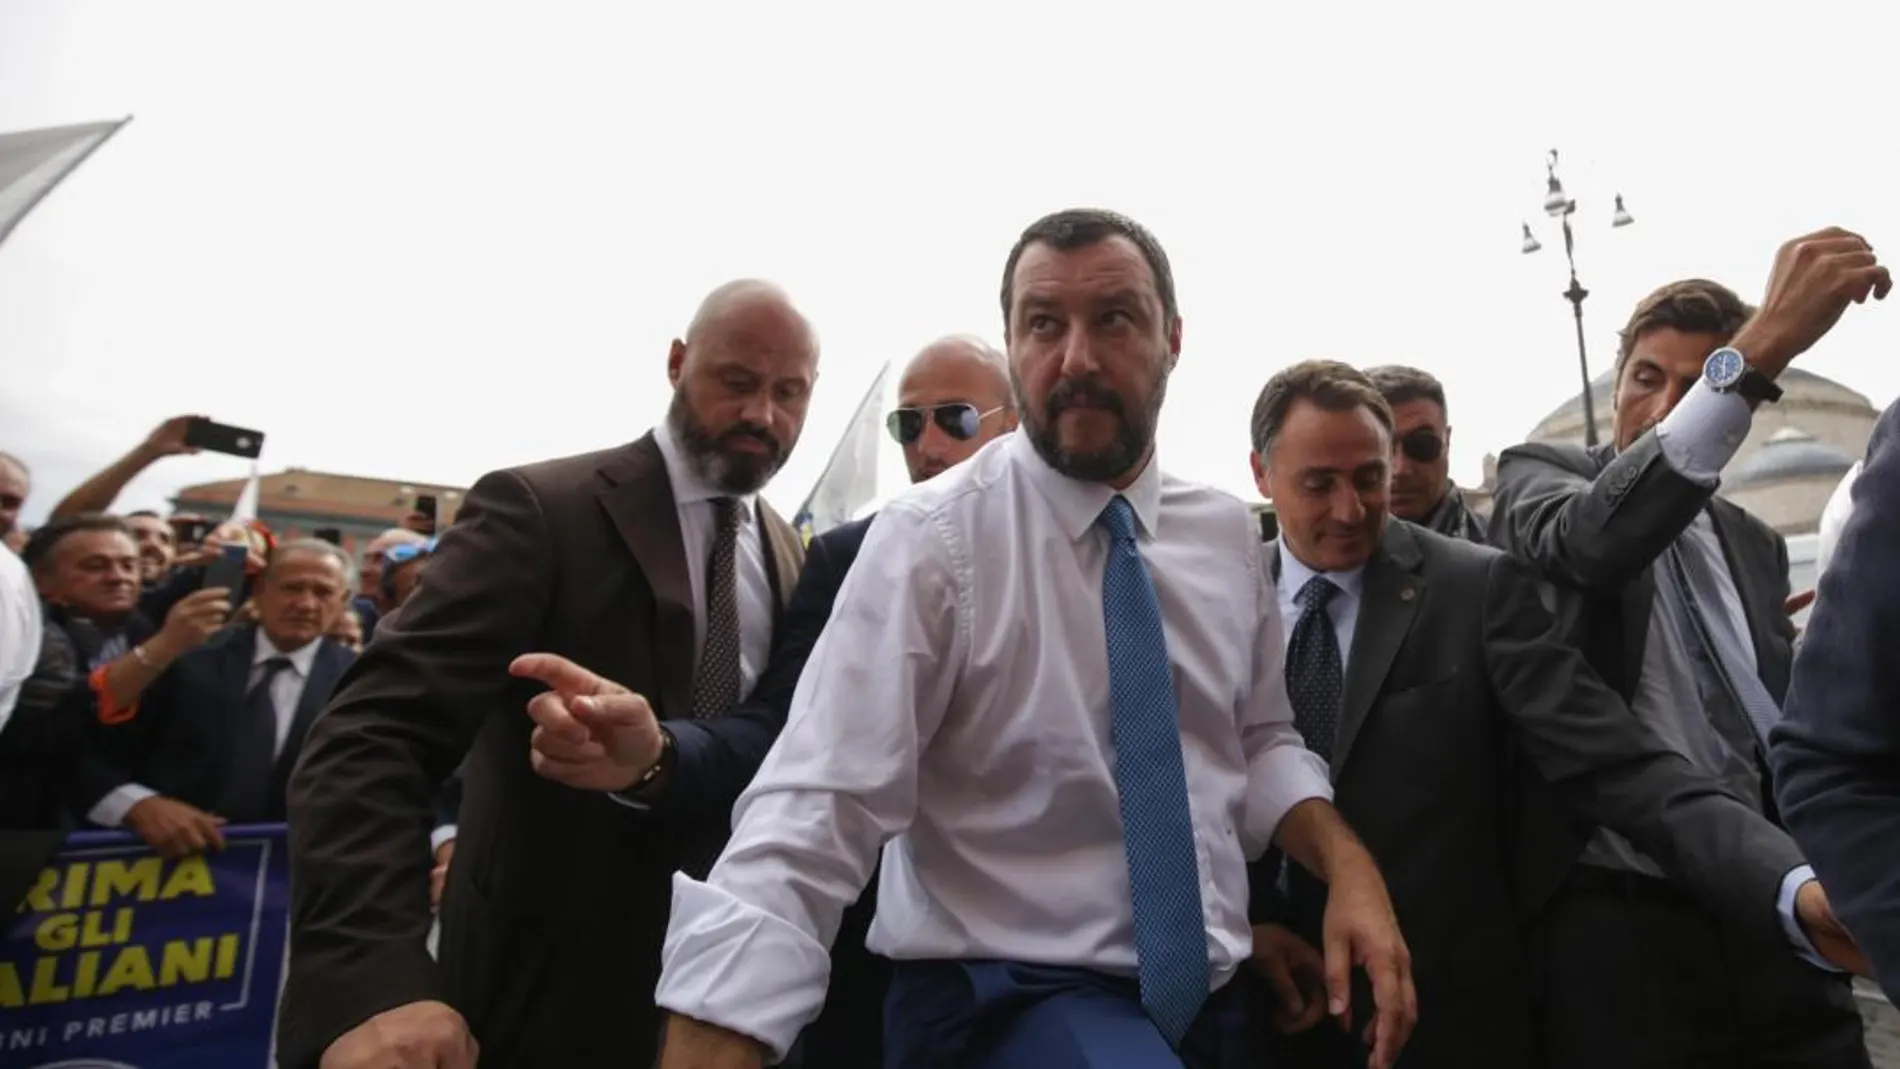 El ministro del Interior, Matteo Salvini (c), saluda a varios seguidores durante su visita a Nápoles, Italia, ayer / Foto: Efe